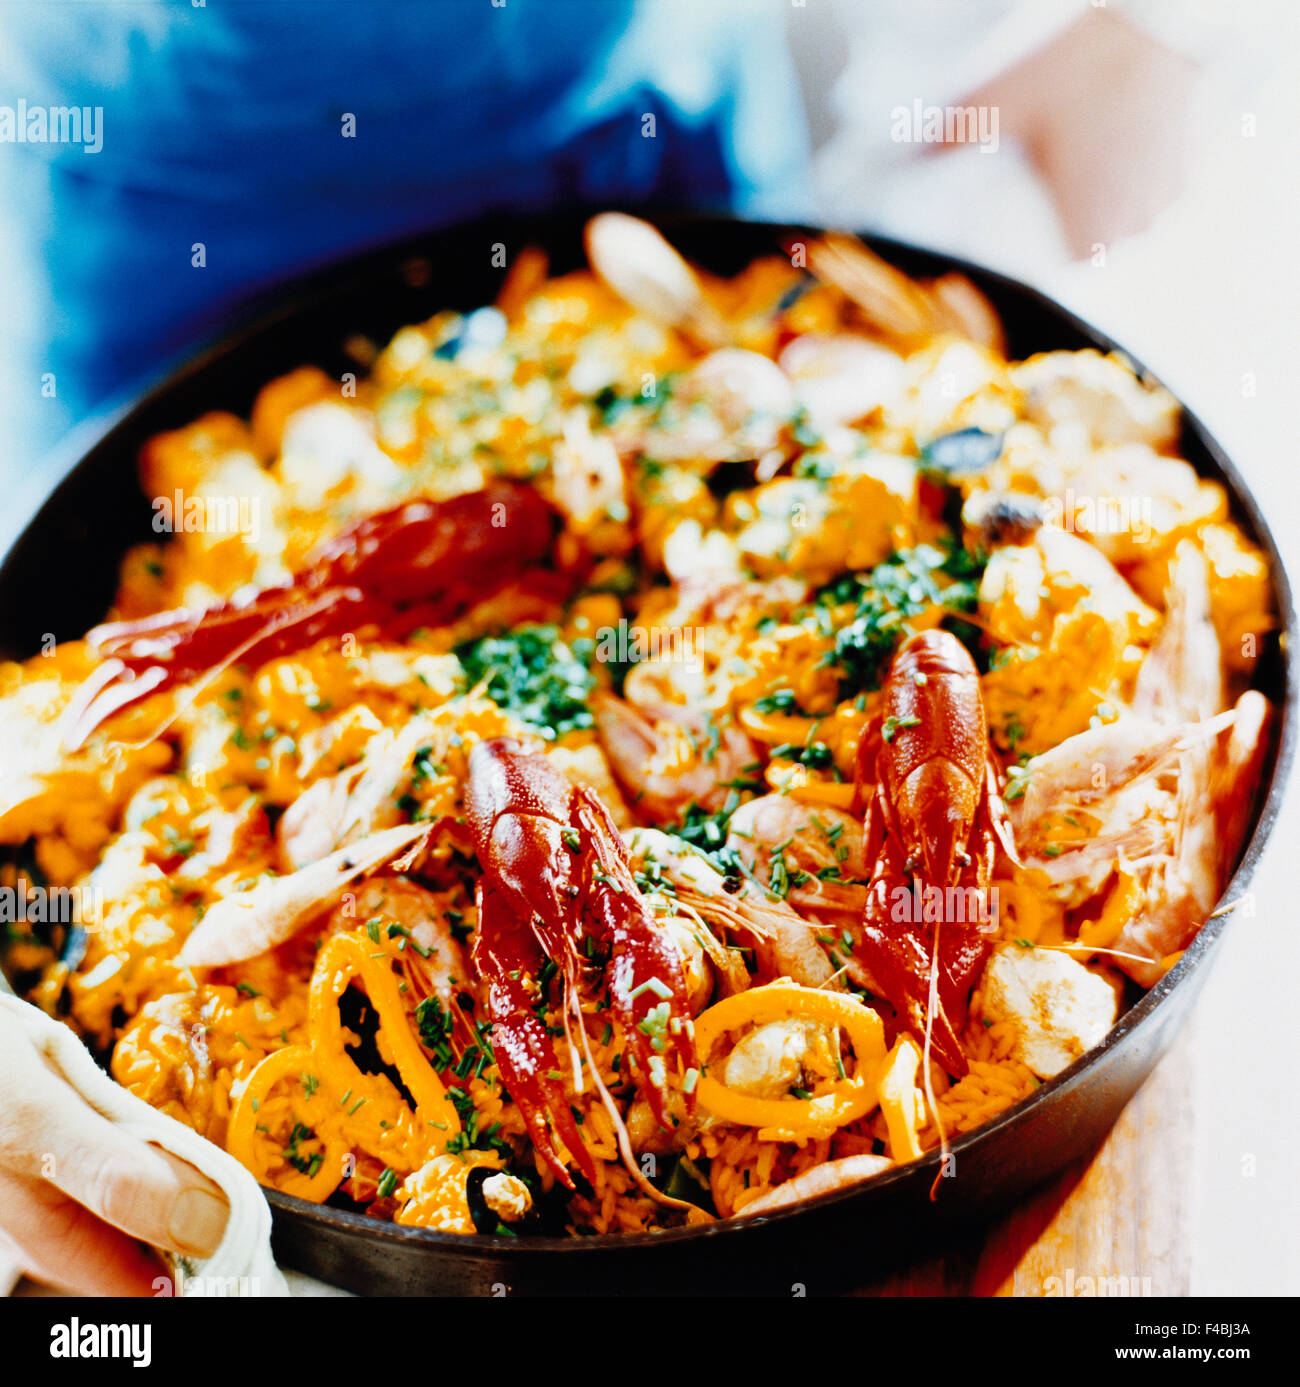 Katalog 2 close-up Farbe Bild Krebse detail Gericht essen Essen und trinken Gourmet-Hauptgericht Paella Meeresfrüchte Quadrat Schwedisch Stockfoto